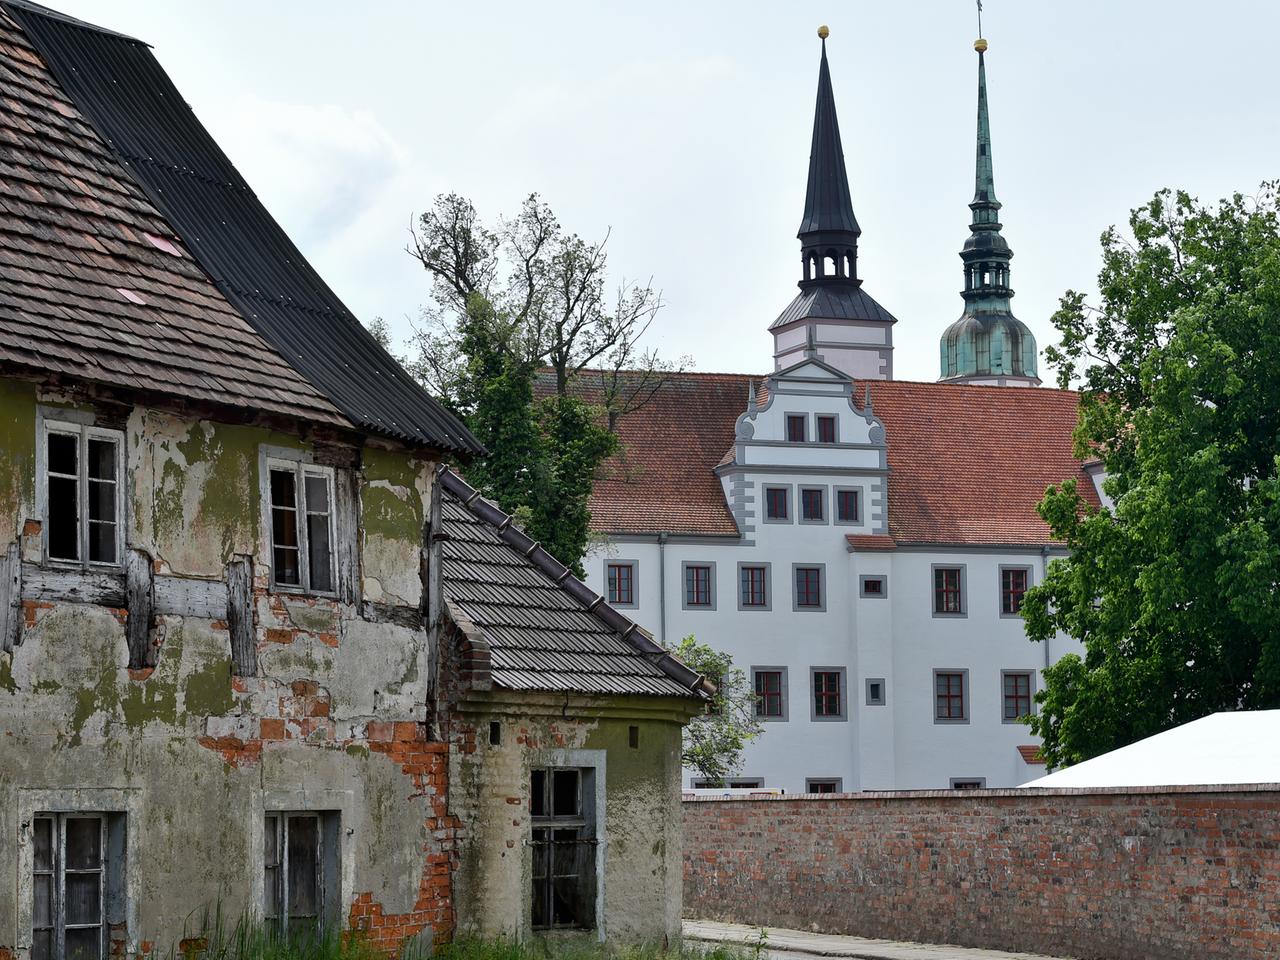 Ein völlig marodes und altes Fachwerkhaus ist neben dem schmucken Schloss Doberlug in Doberlug-Kirchhain (Brandenburg) zu sehen.